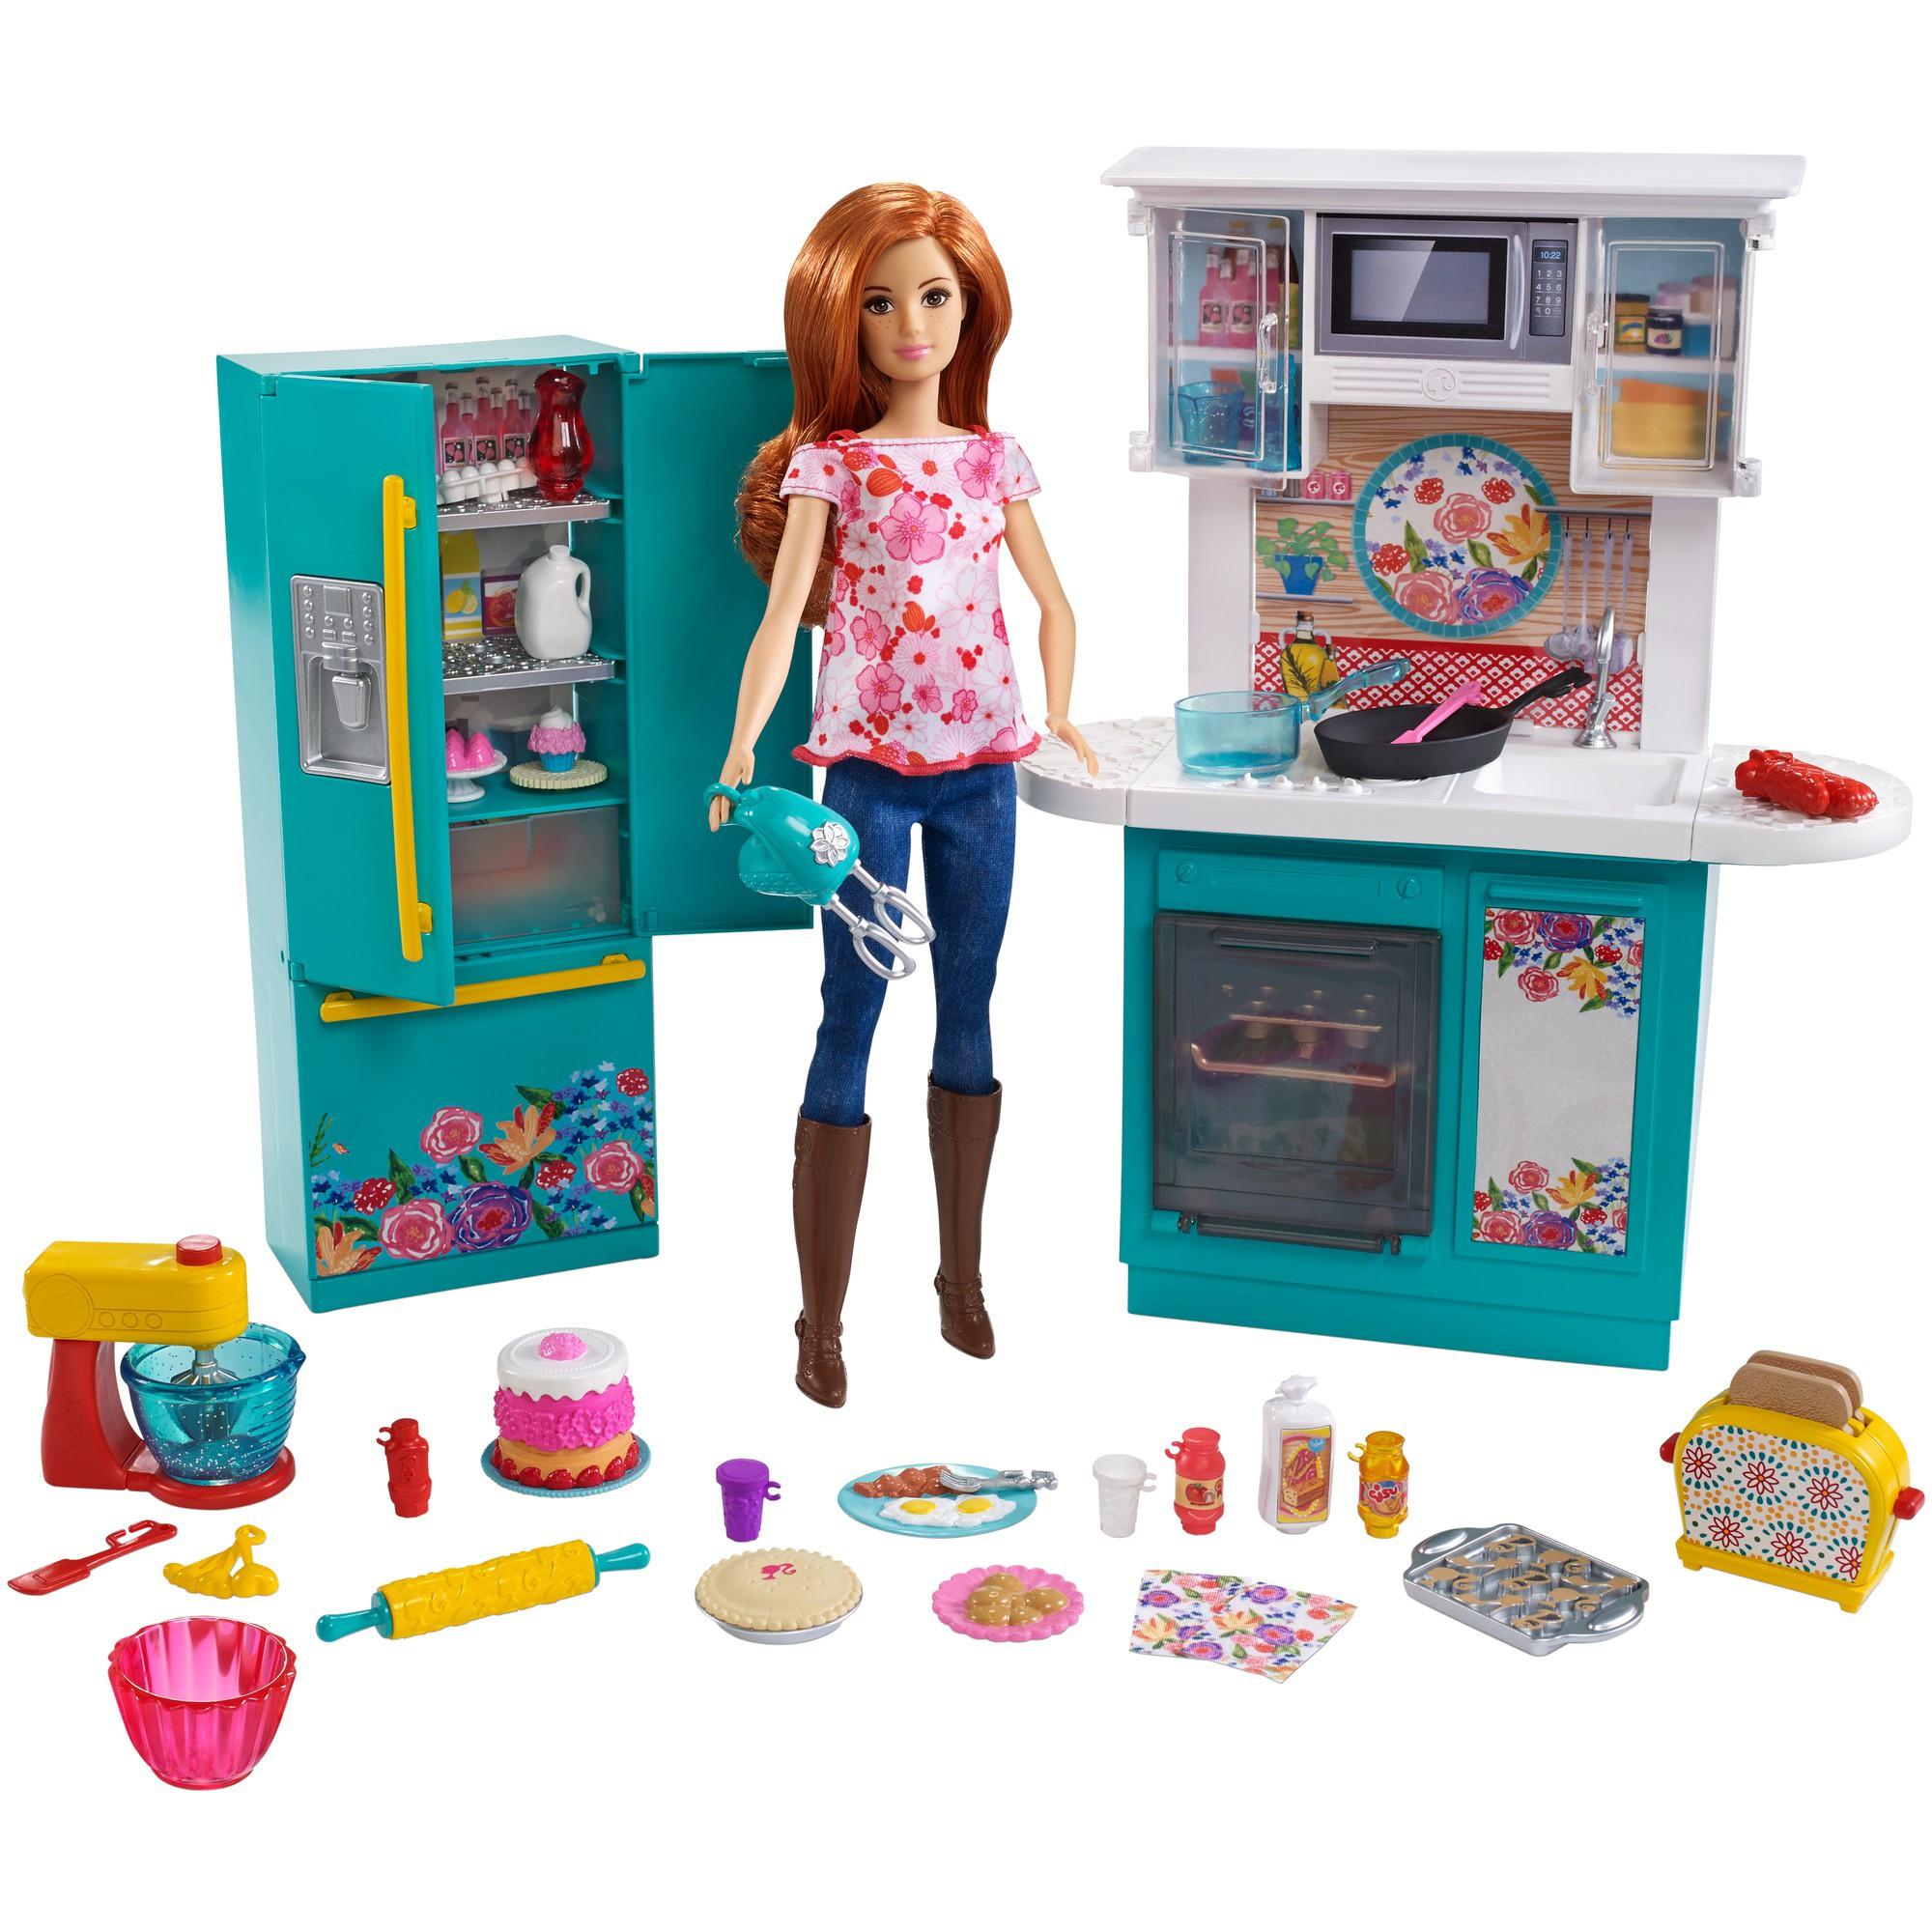 Pioneer Woman Barbie set